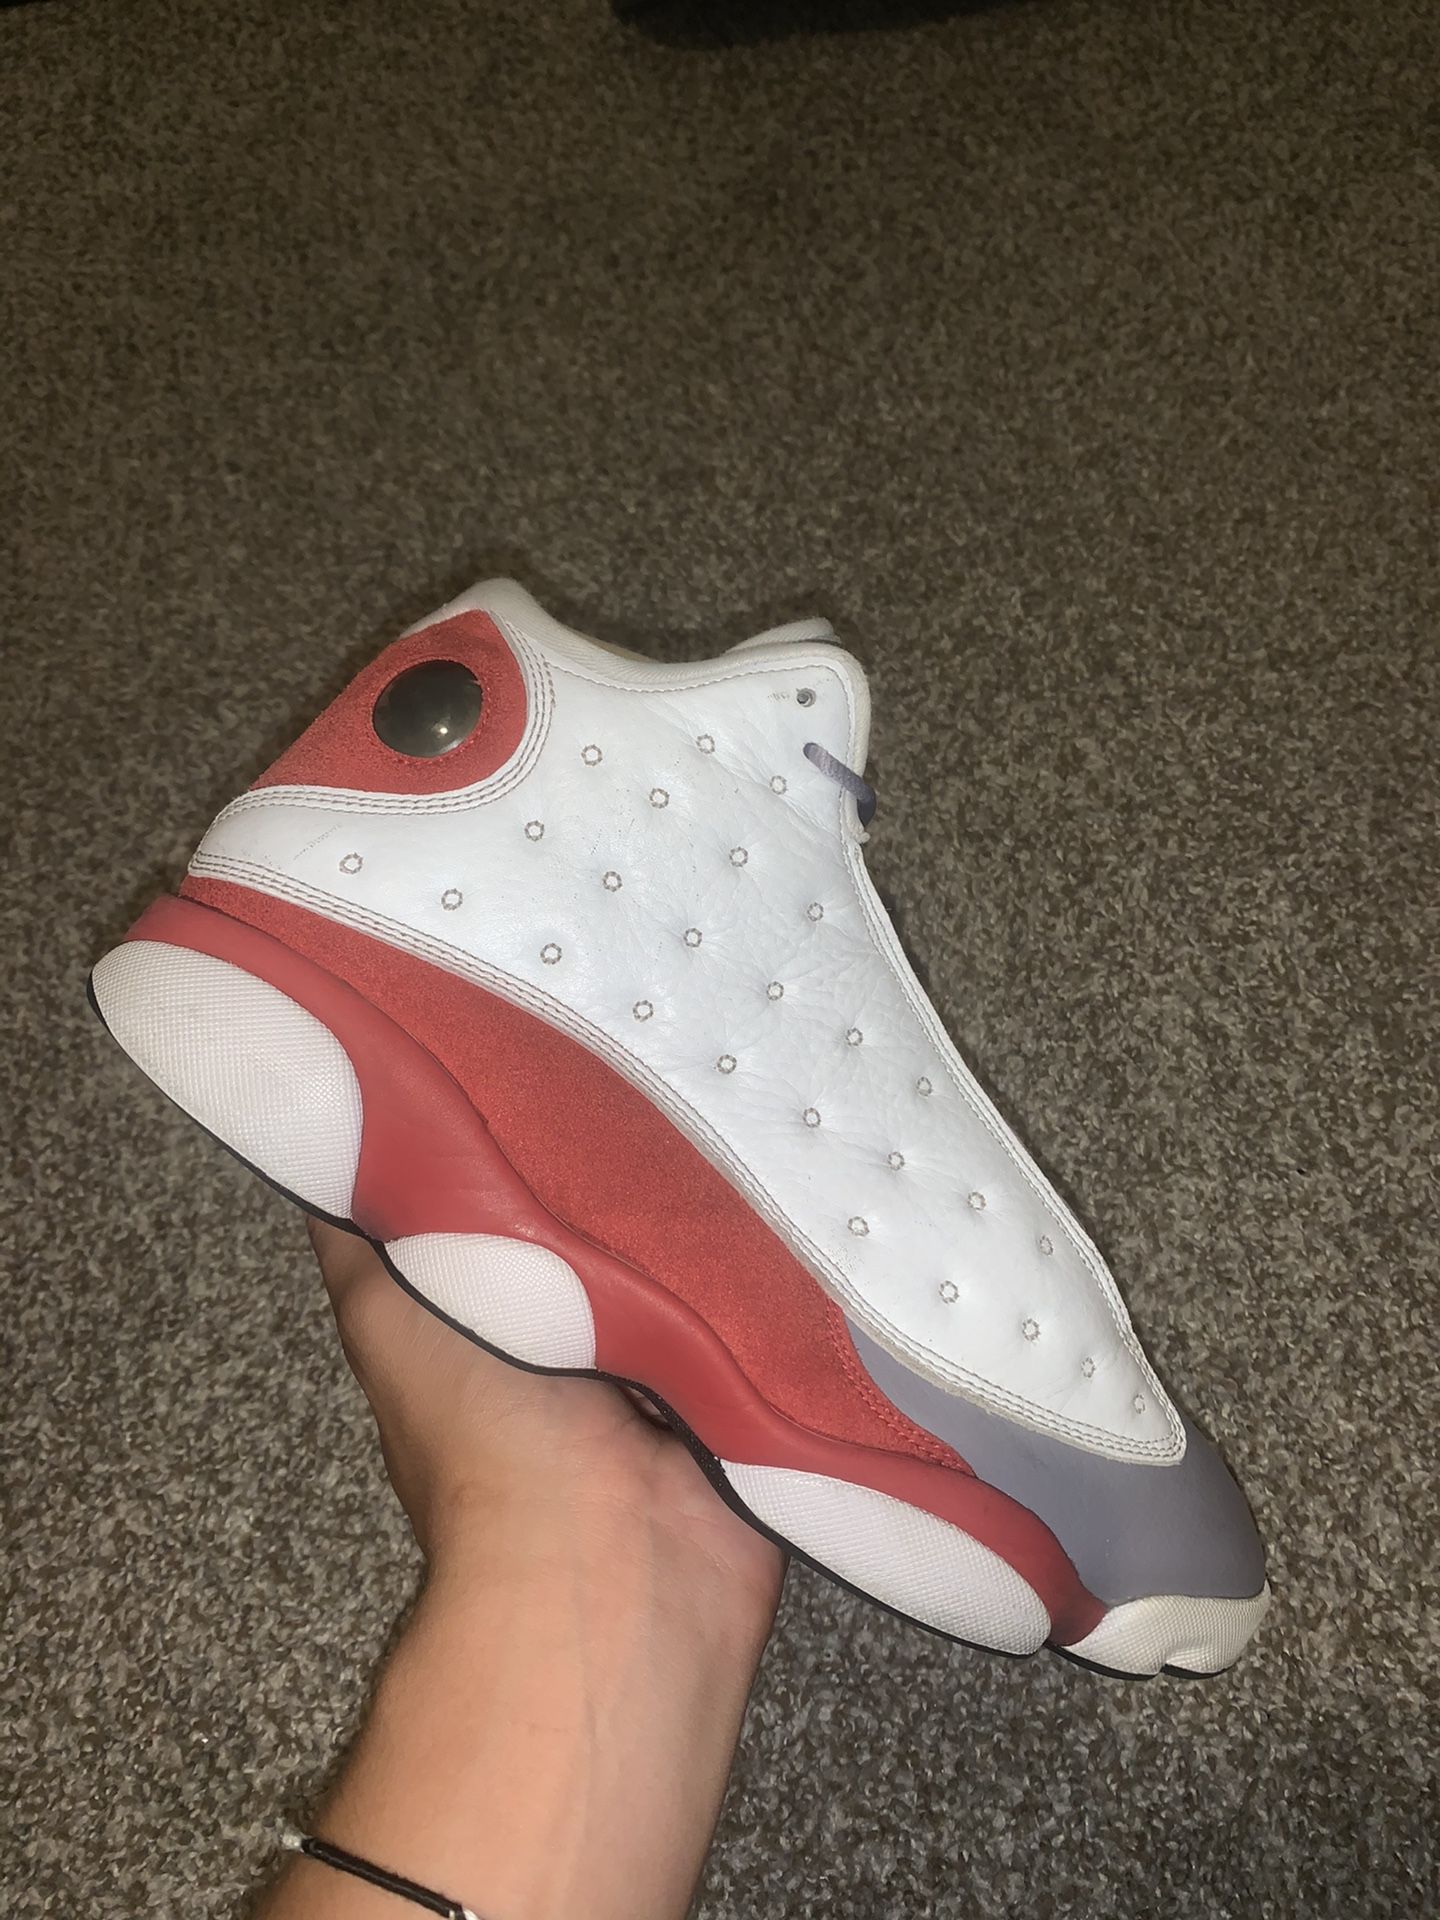 Jordan 13s size 10.5